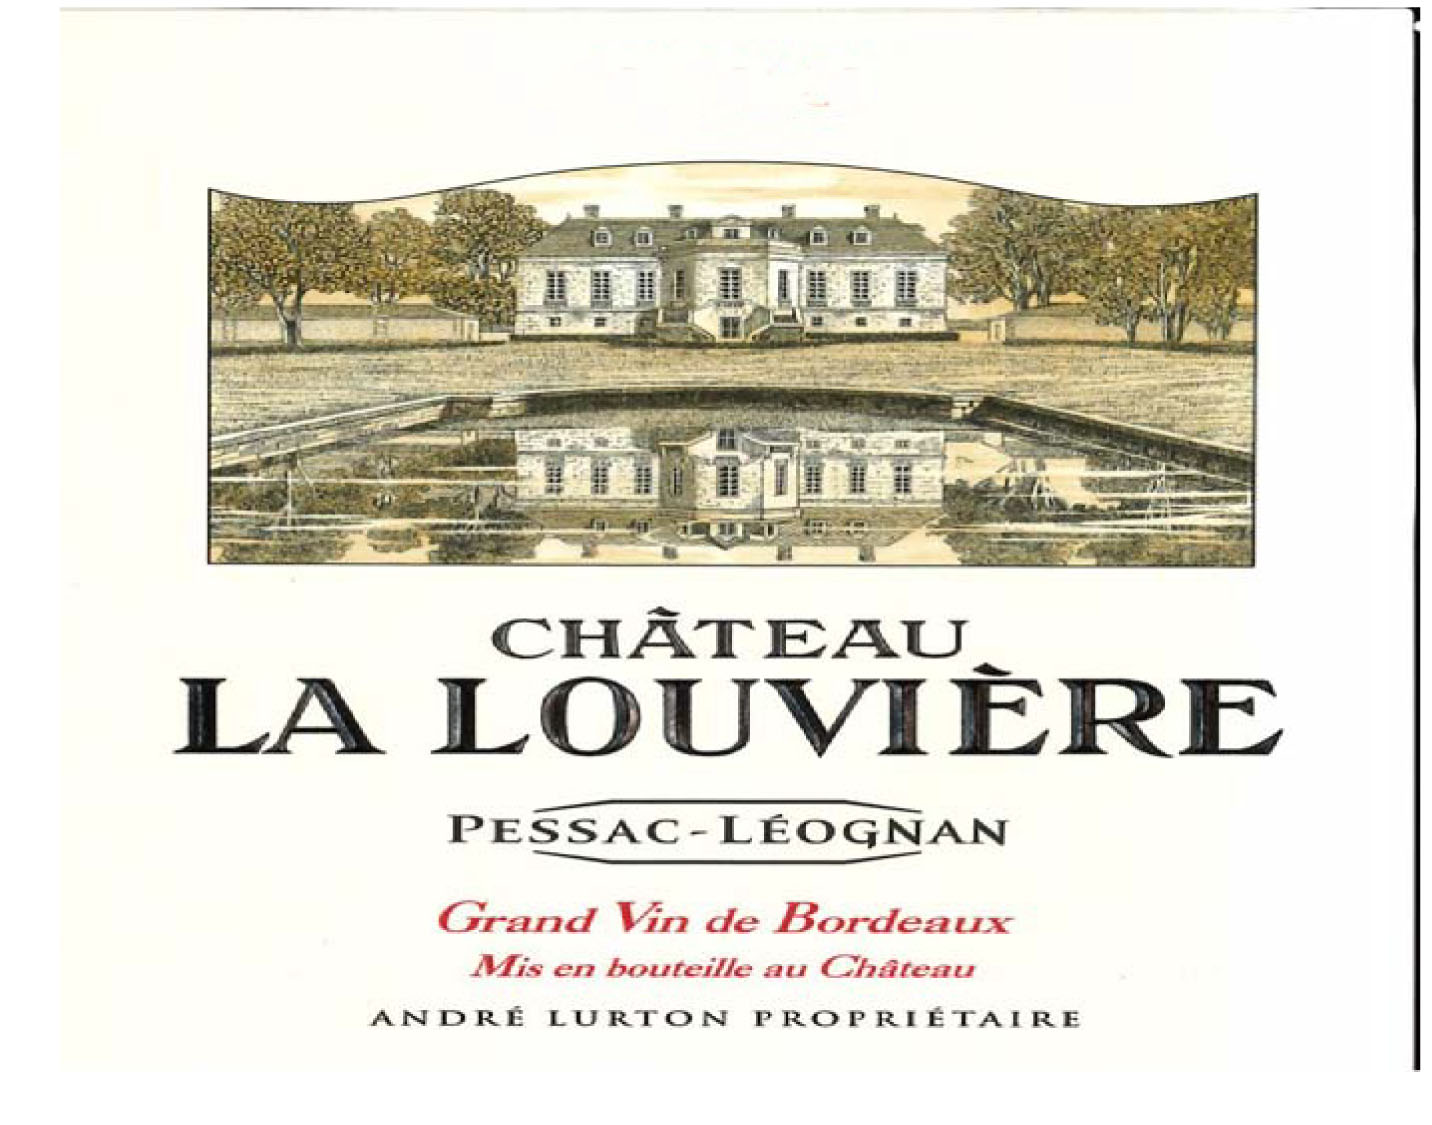 Chateau La Louviere Rouge label